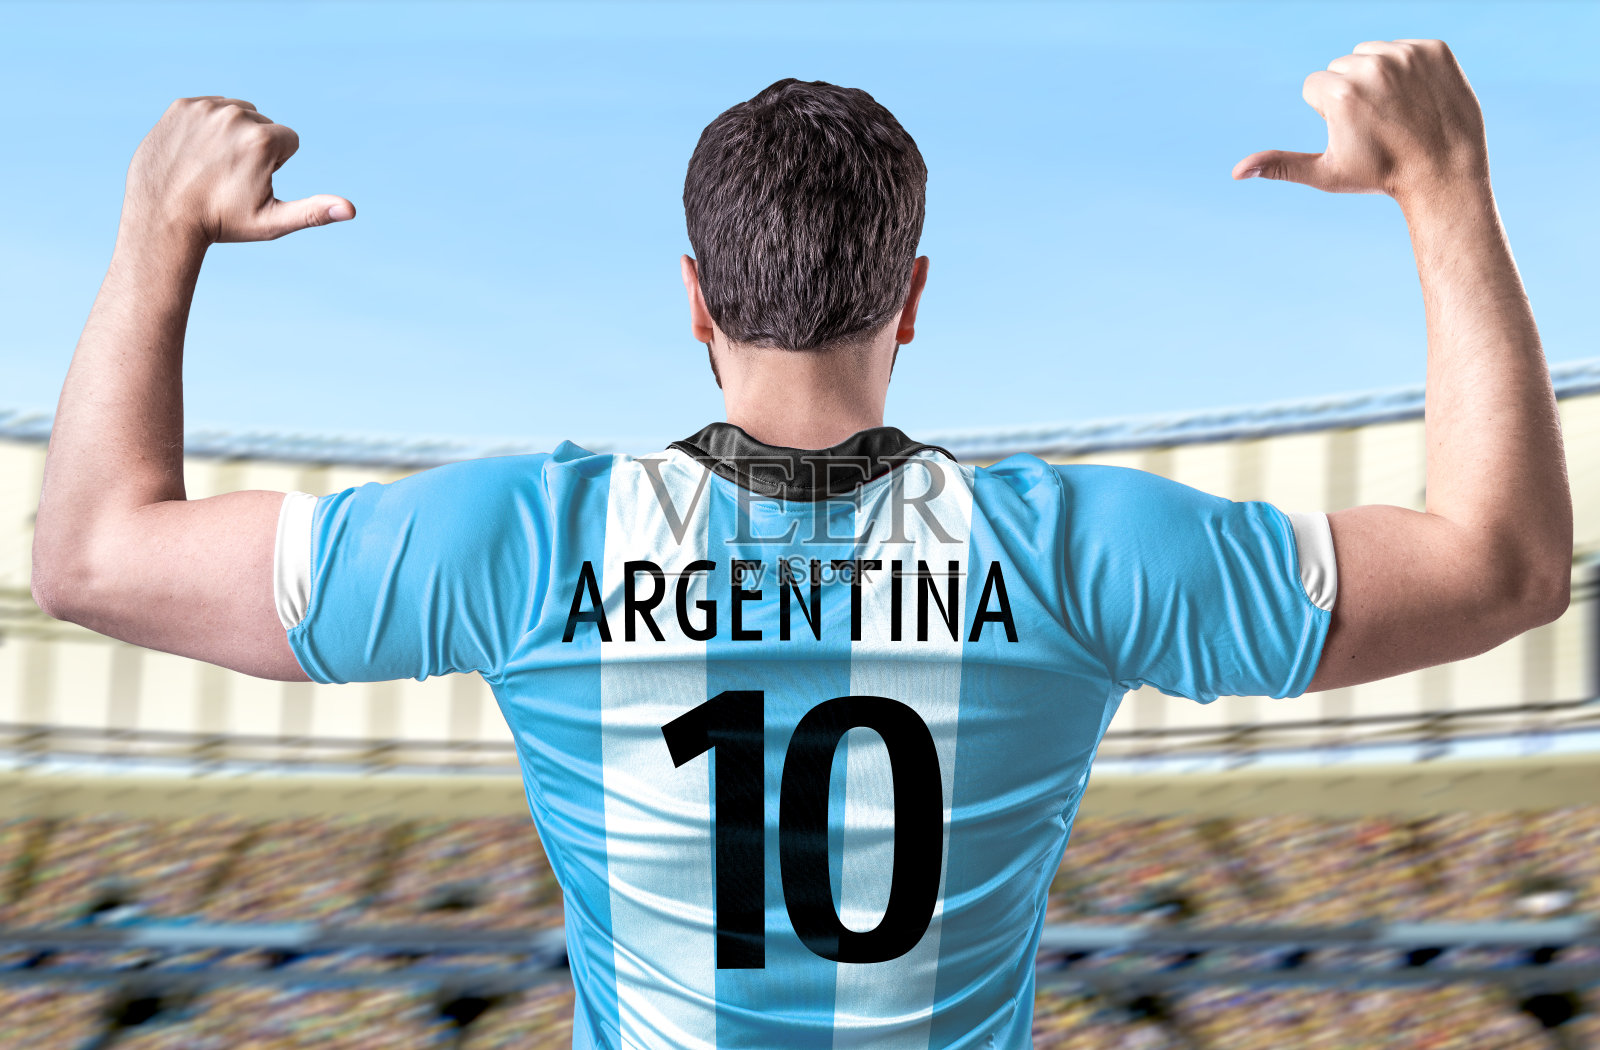 阿根廷球迷庆祝照片摄影图片